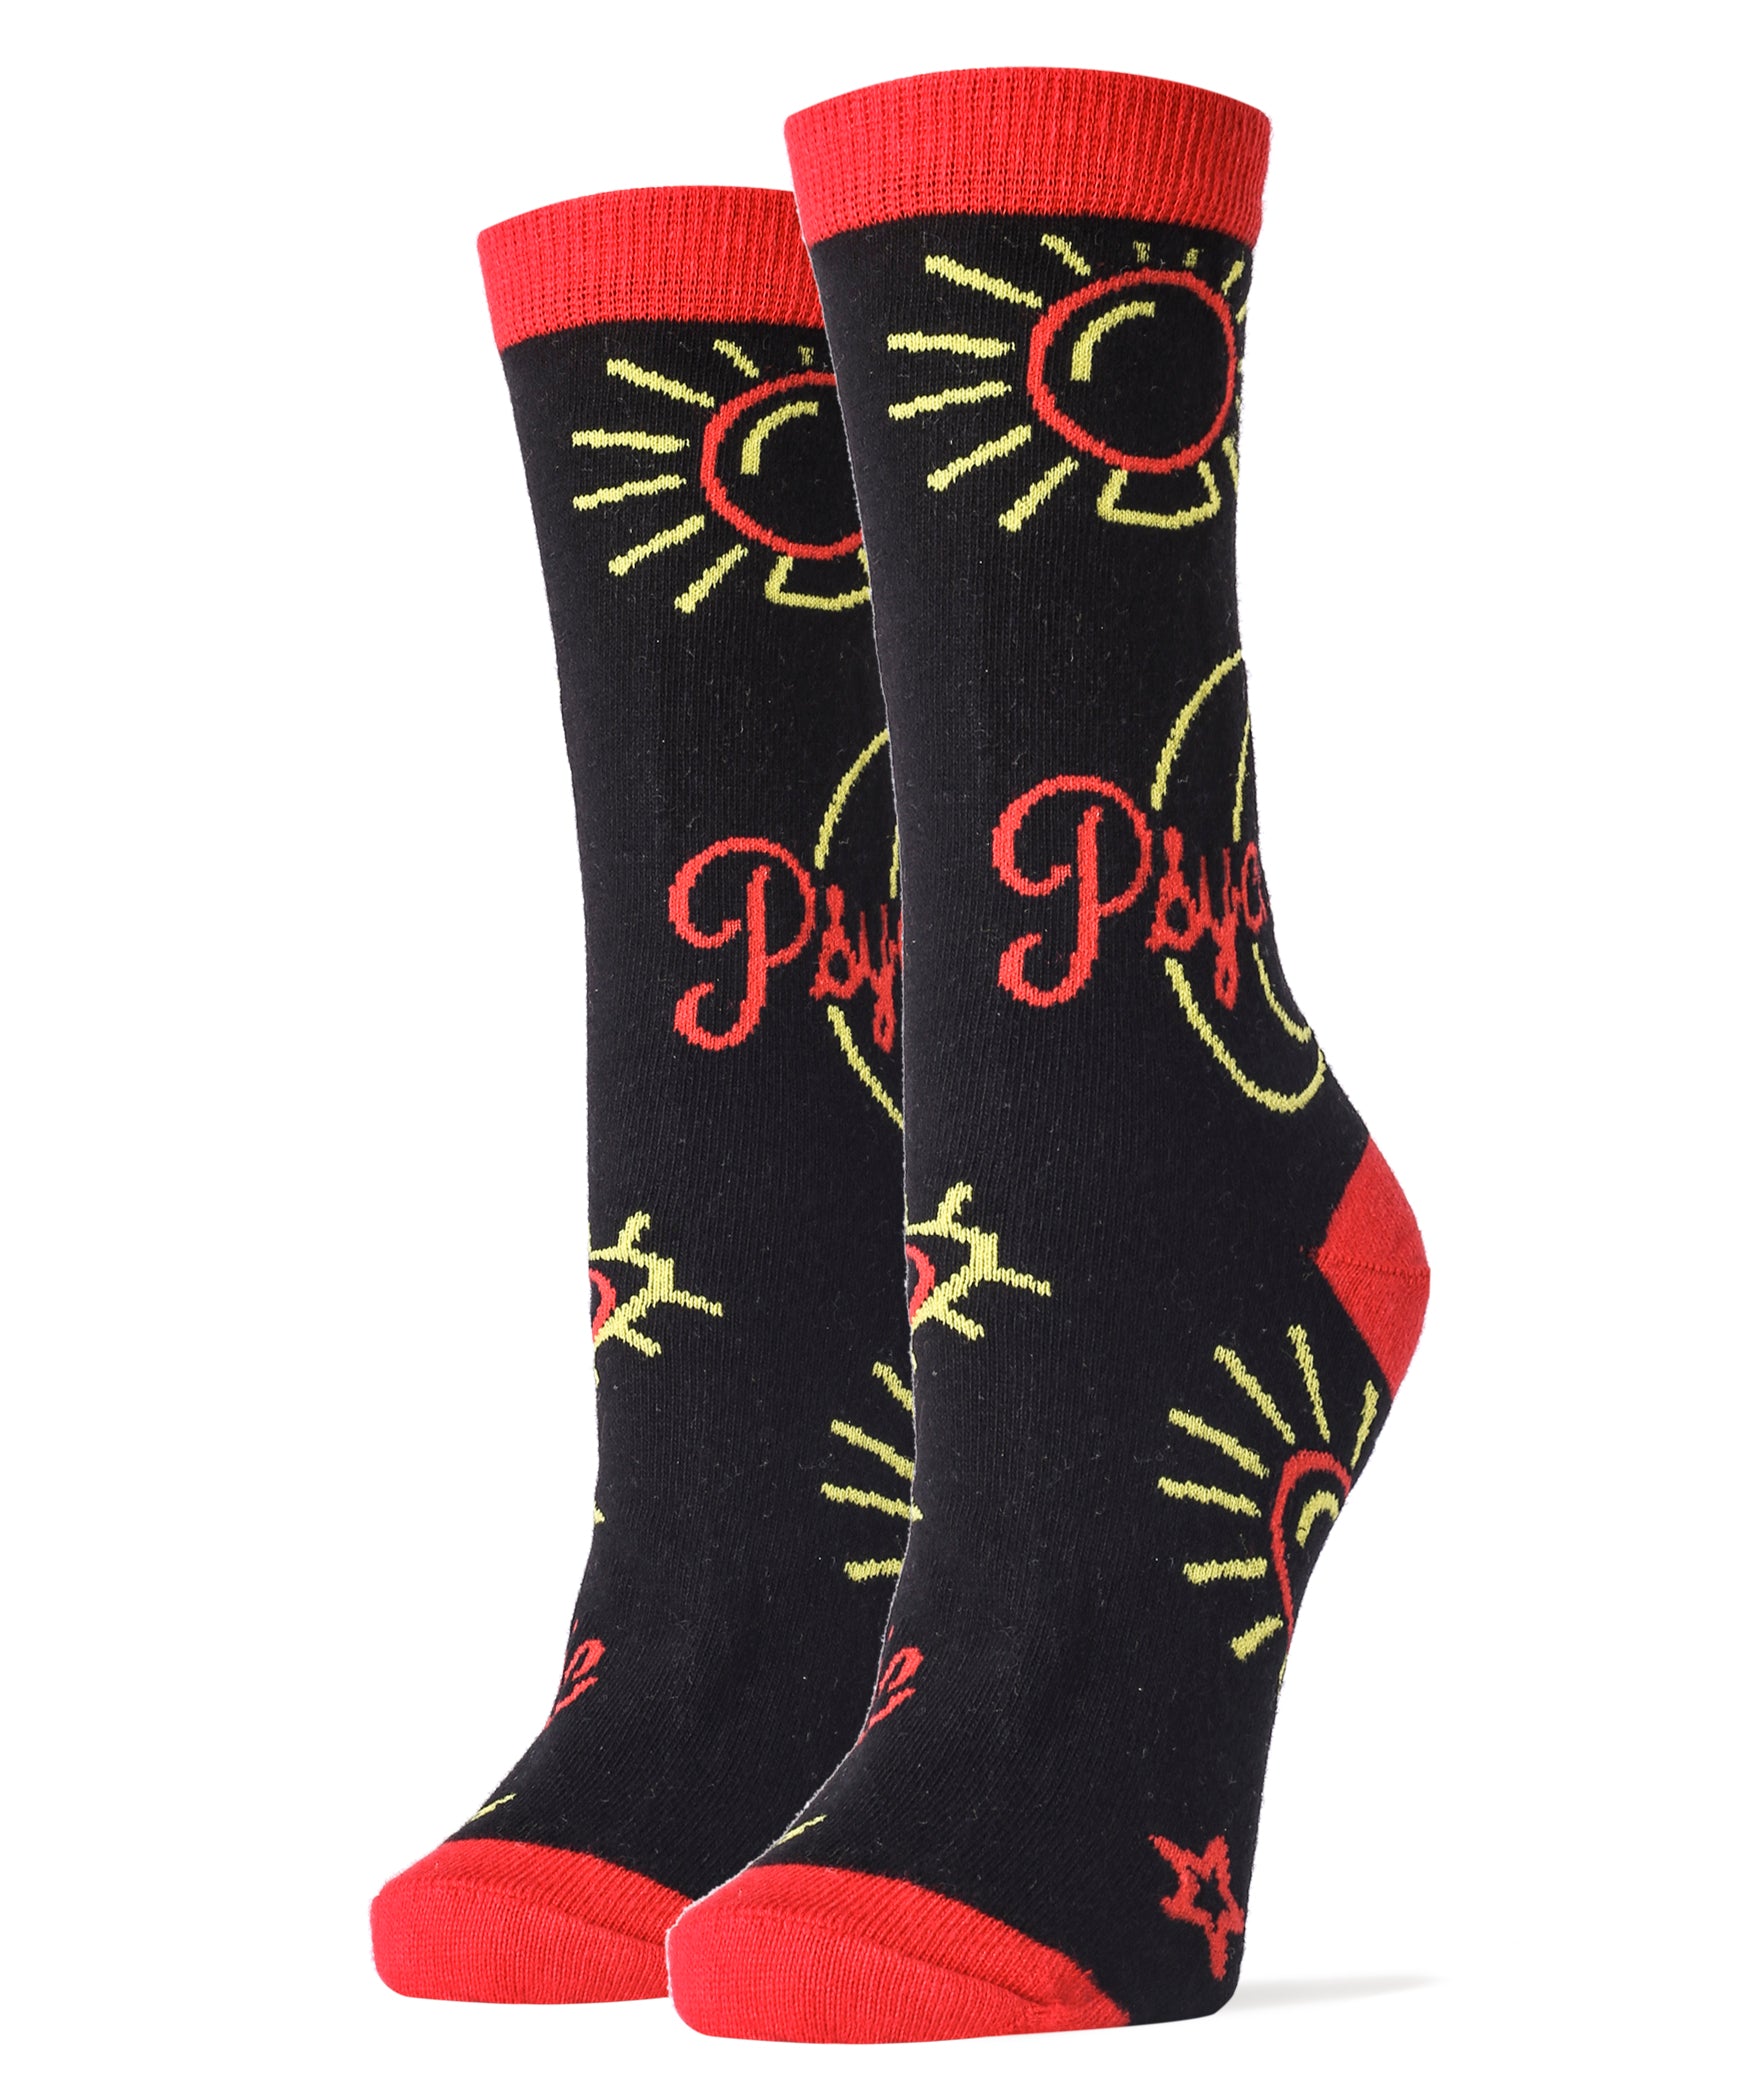 Psychic Socks | Novelty Crew Socks For Women